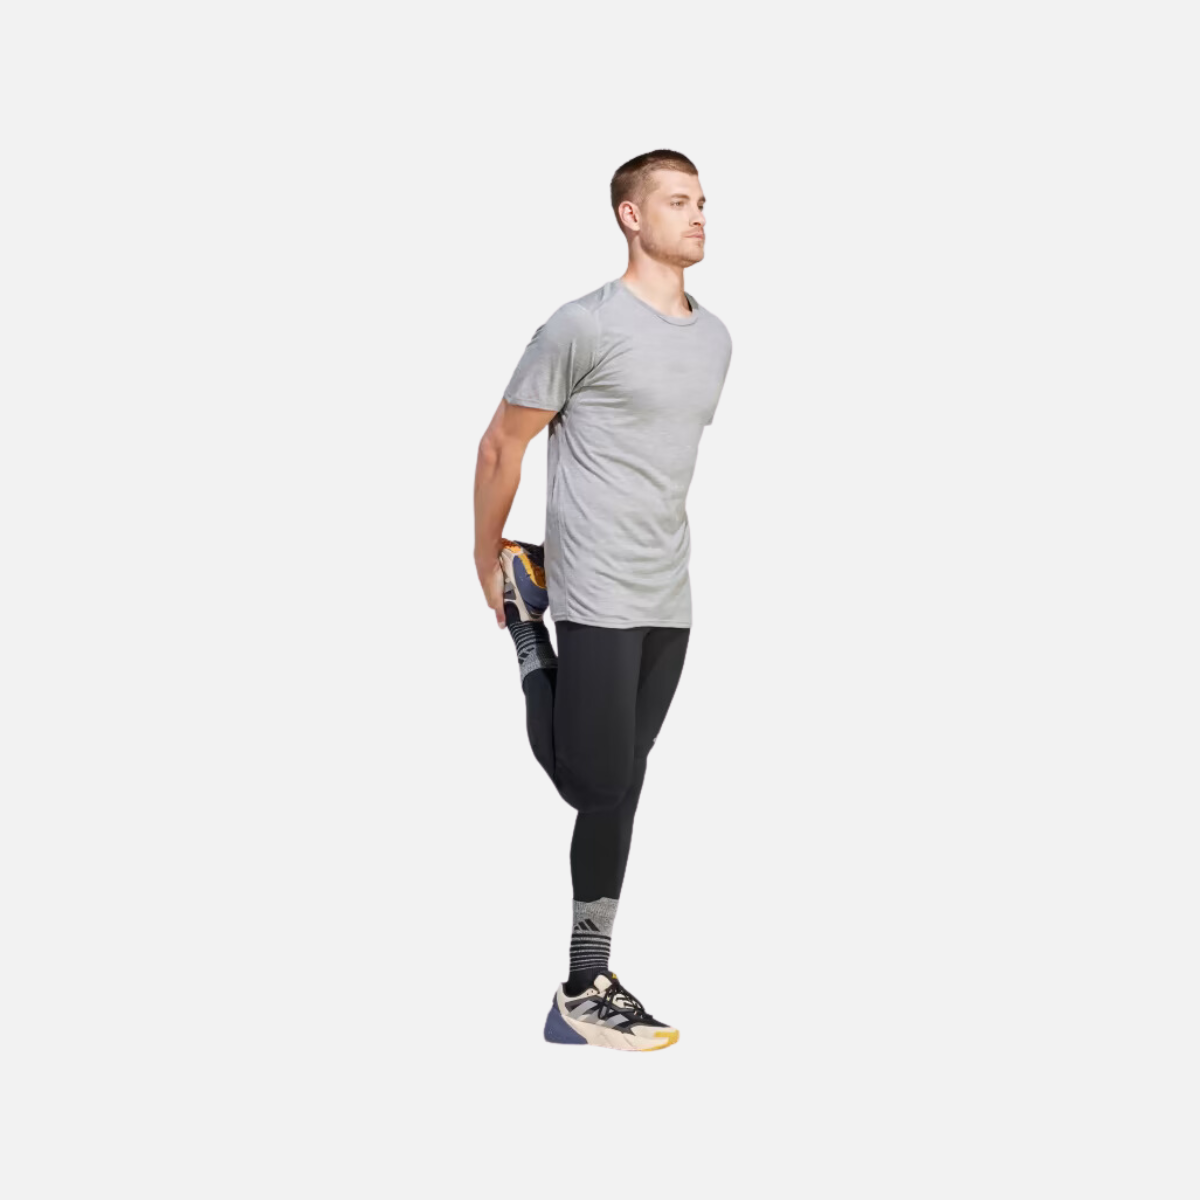 Adidas Ultimate Conquer Aeroready Men's Running Legging -Black